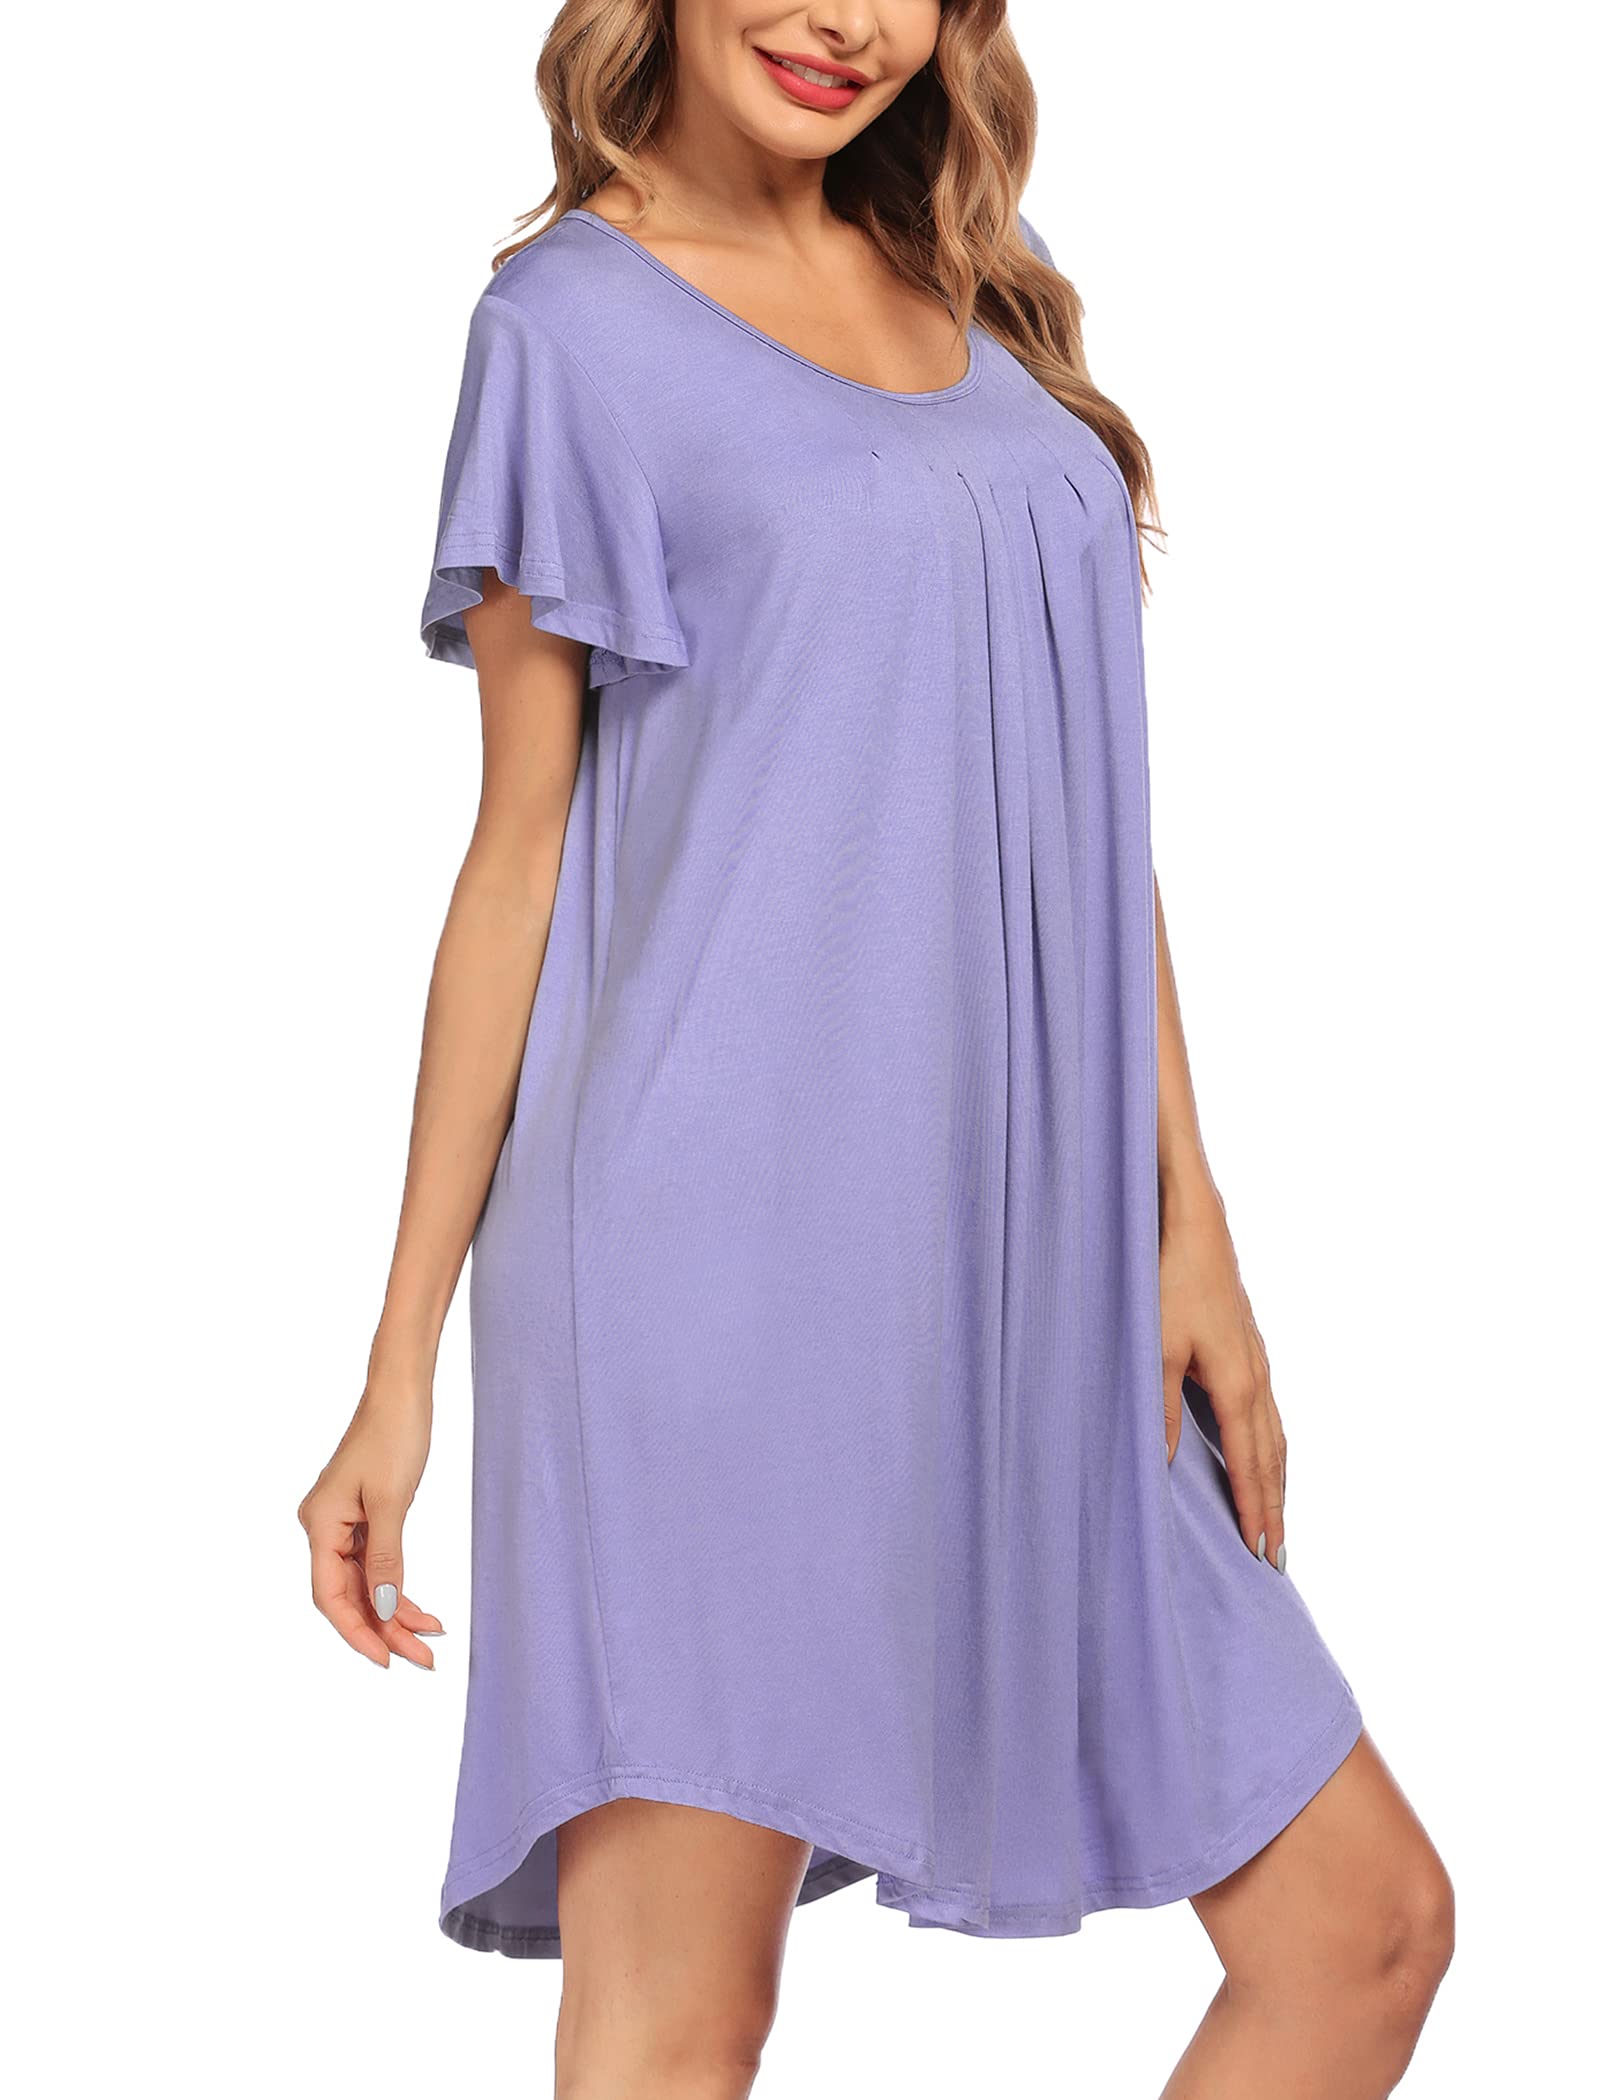 Эмэгтэй унтлагын цамц Зөөлөн унтлагын хувцас (48)